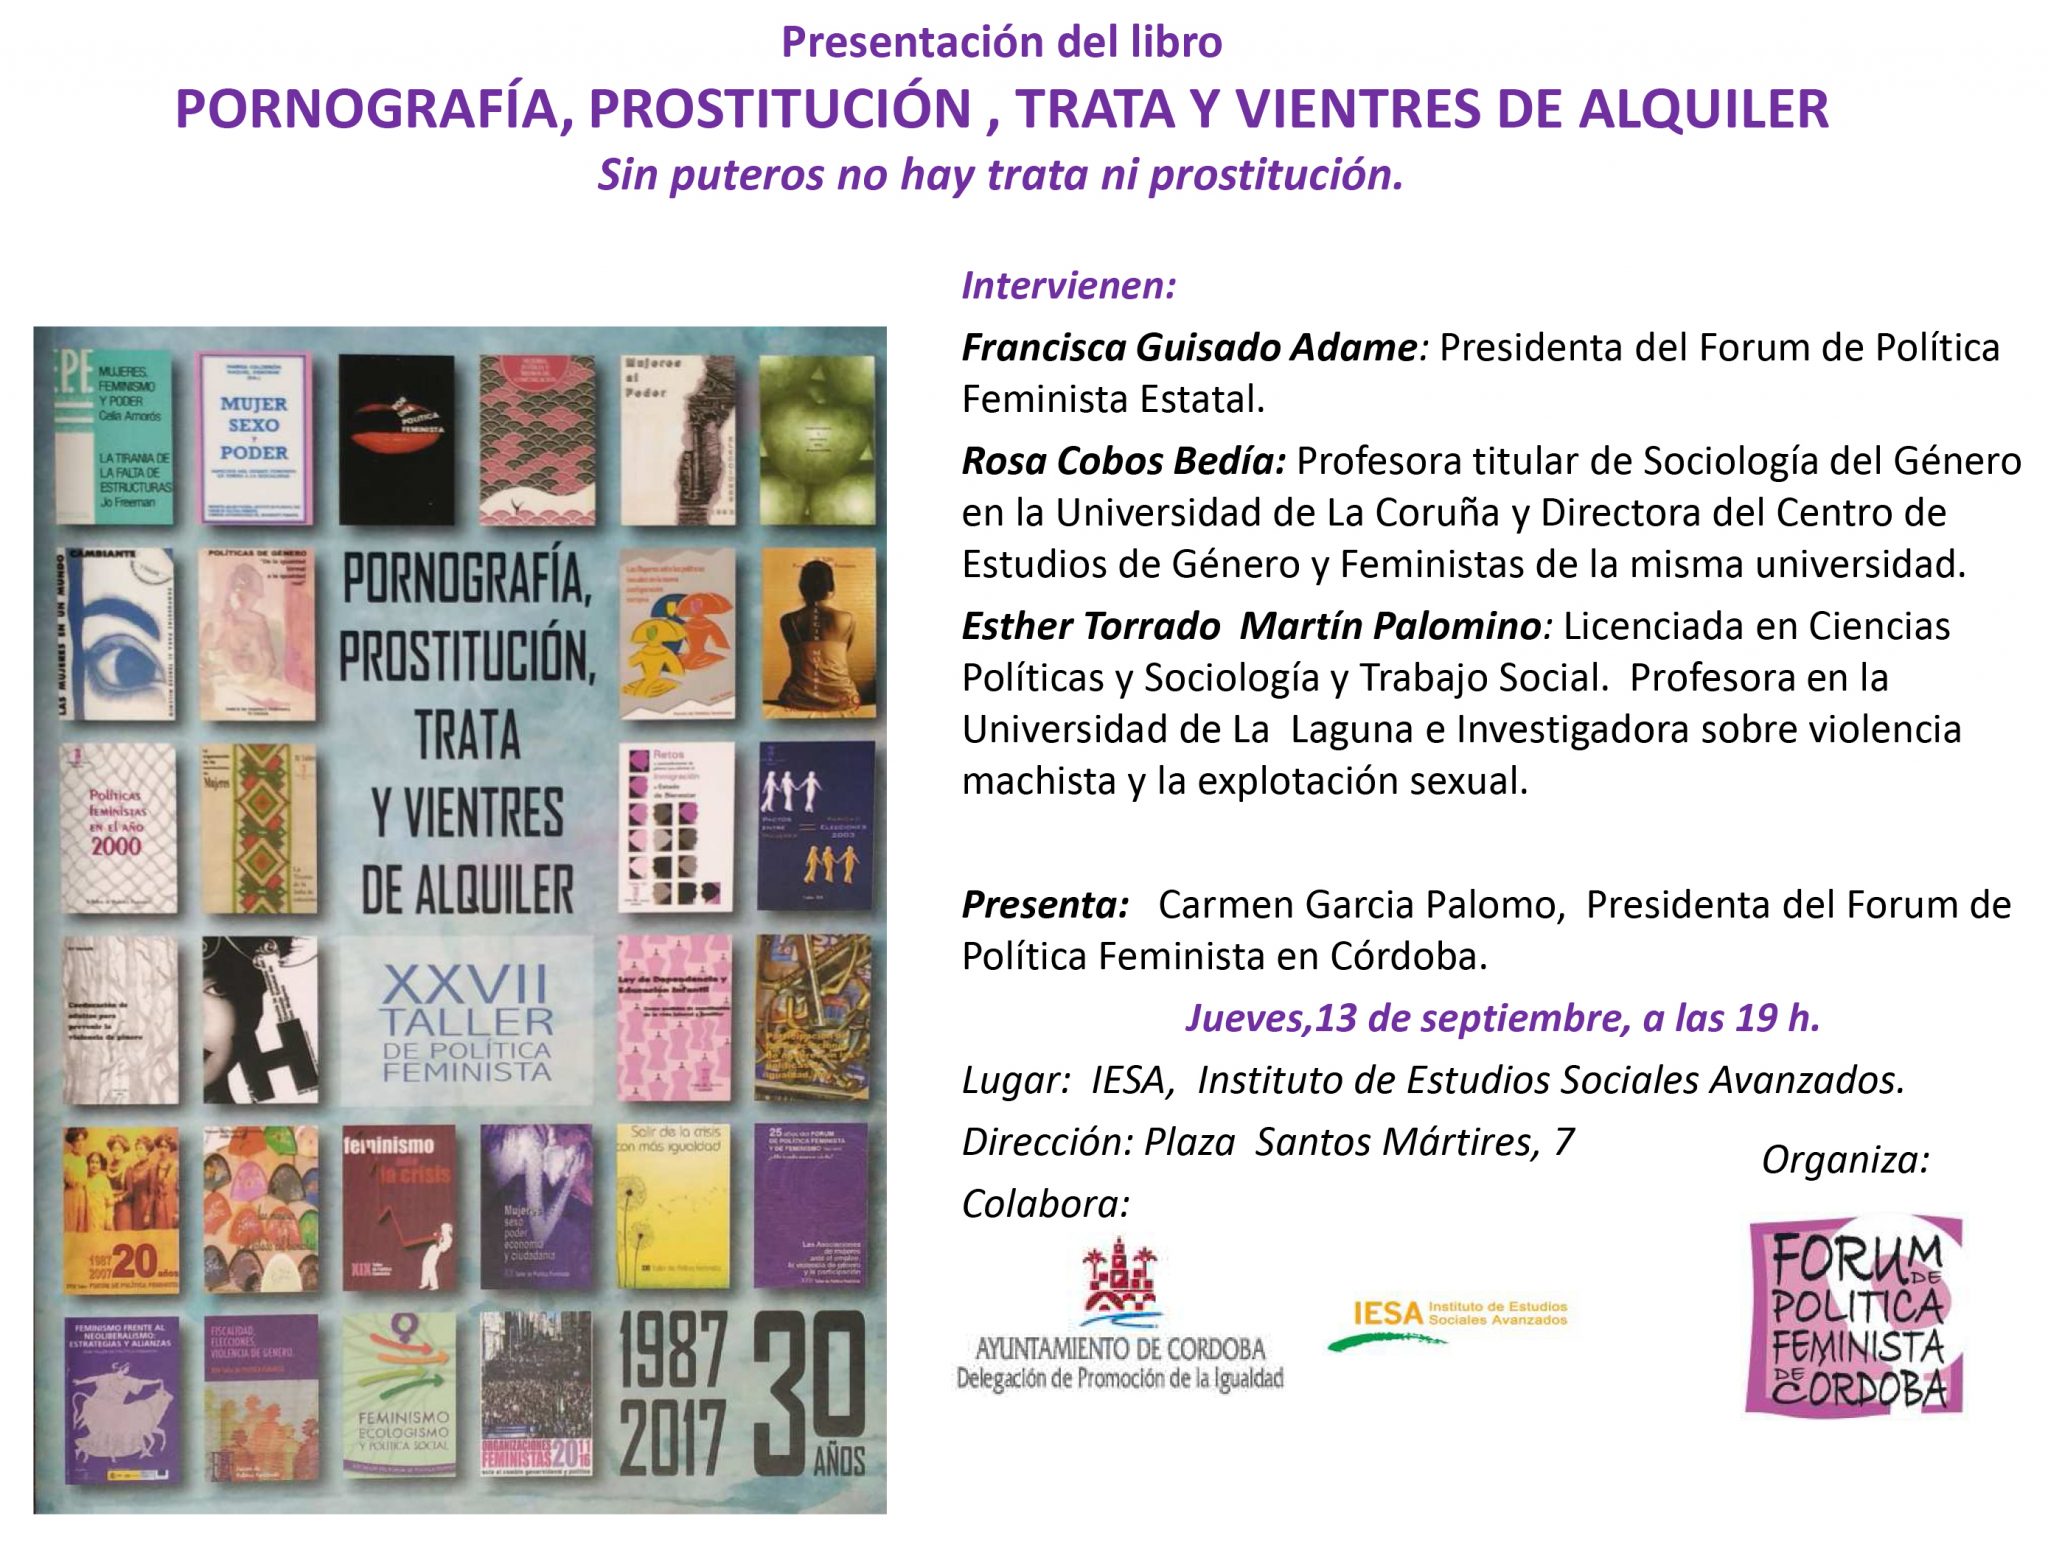 Presentación del libro «Pornografía, Prostitución, Trata y Vientres de Alquiler». Forum de política  Feminista